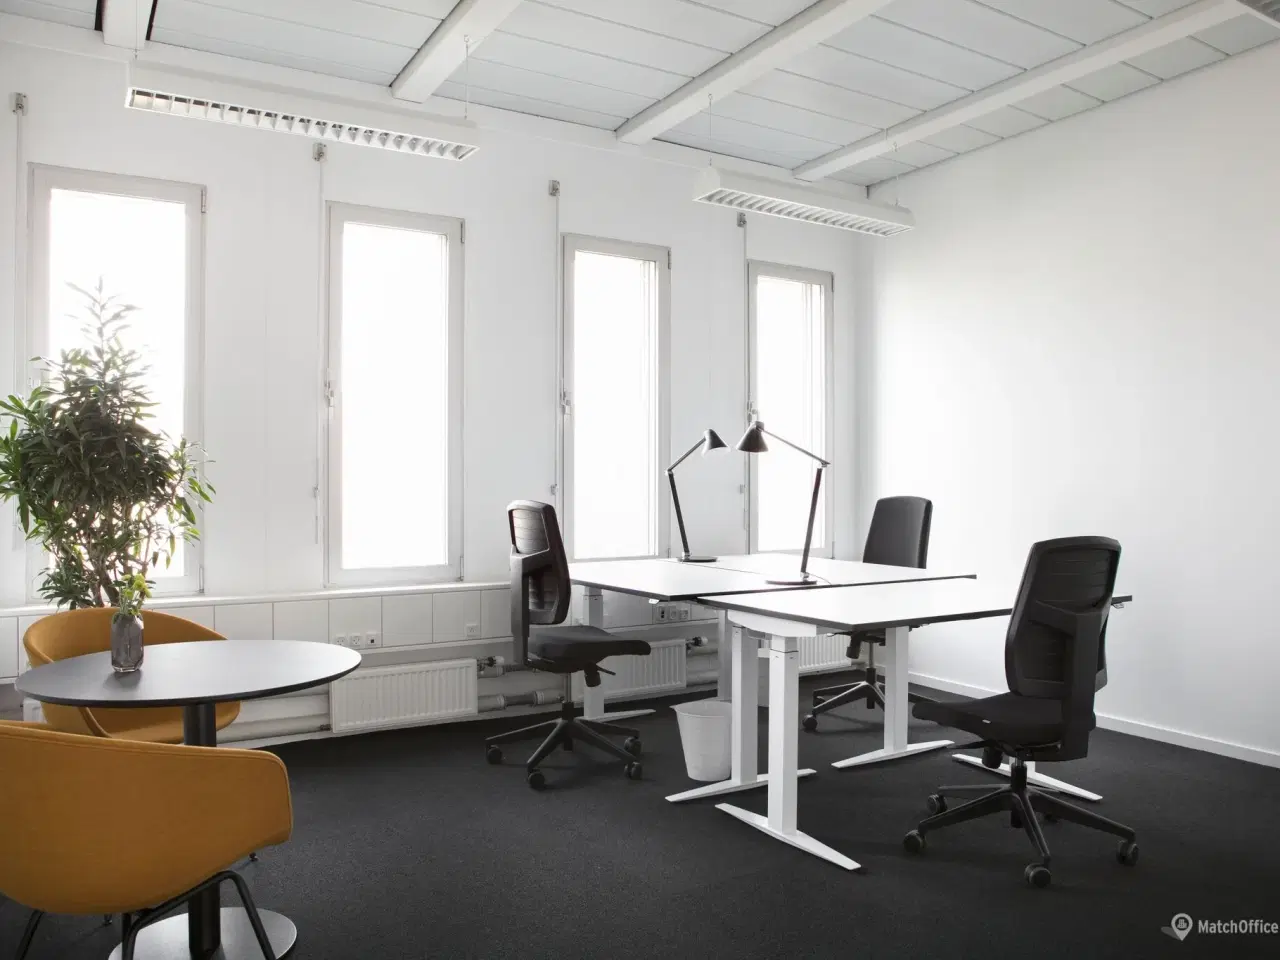 Billede 1 - Billigt kontor i Danmarks svar på Silicon Valley?